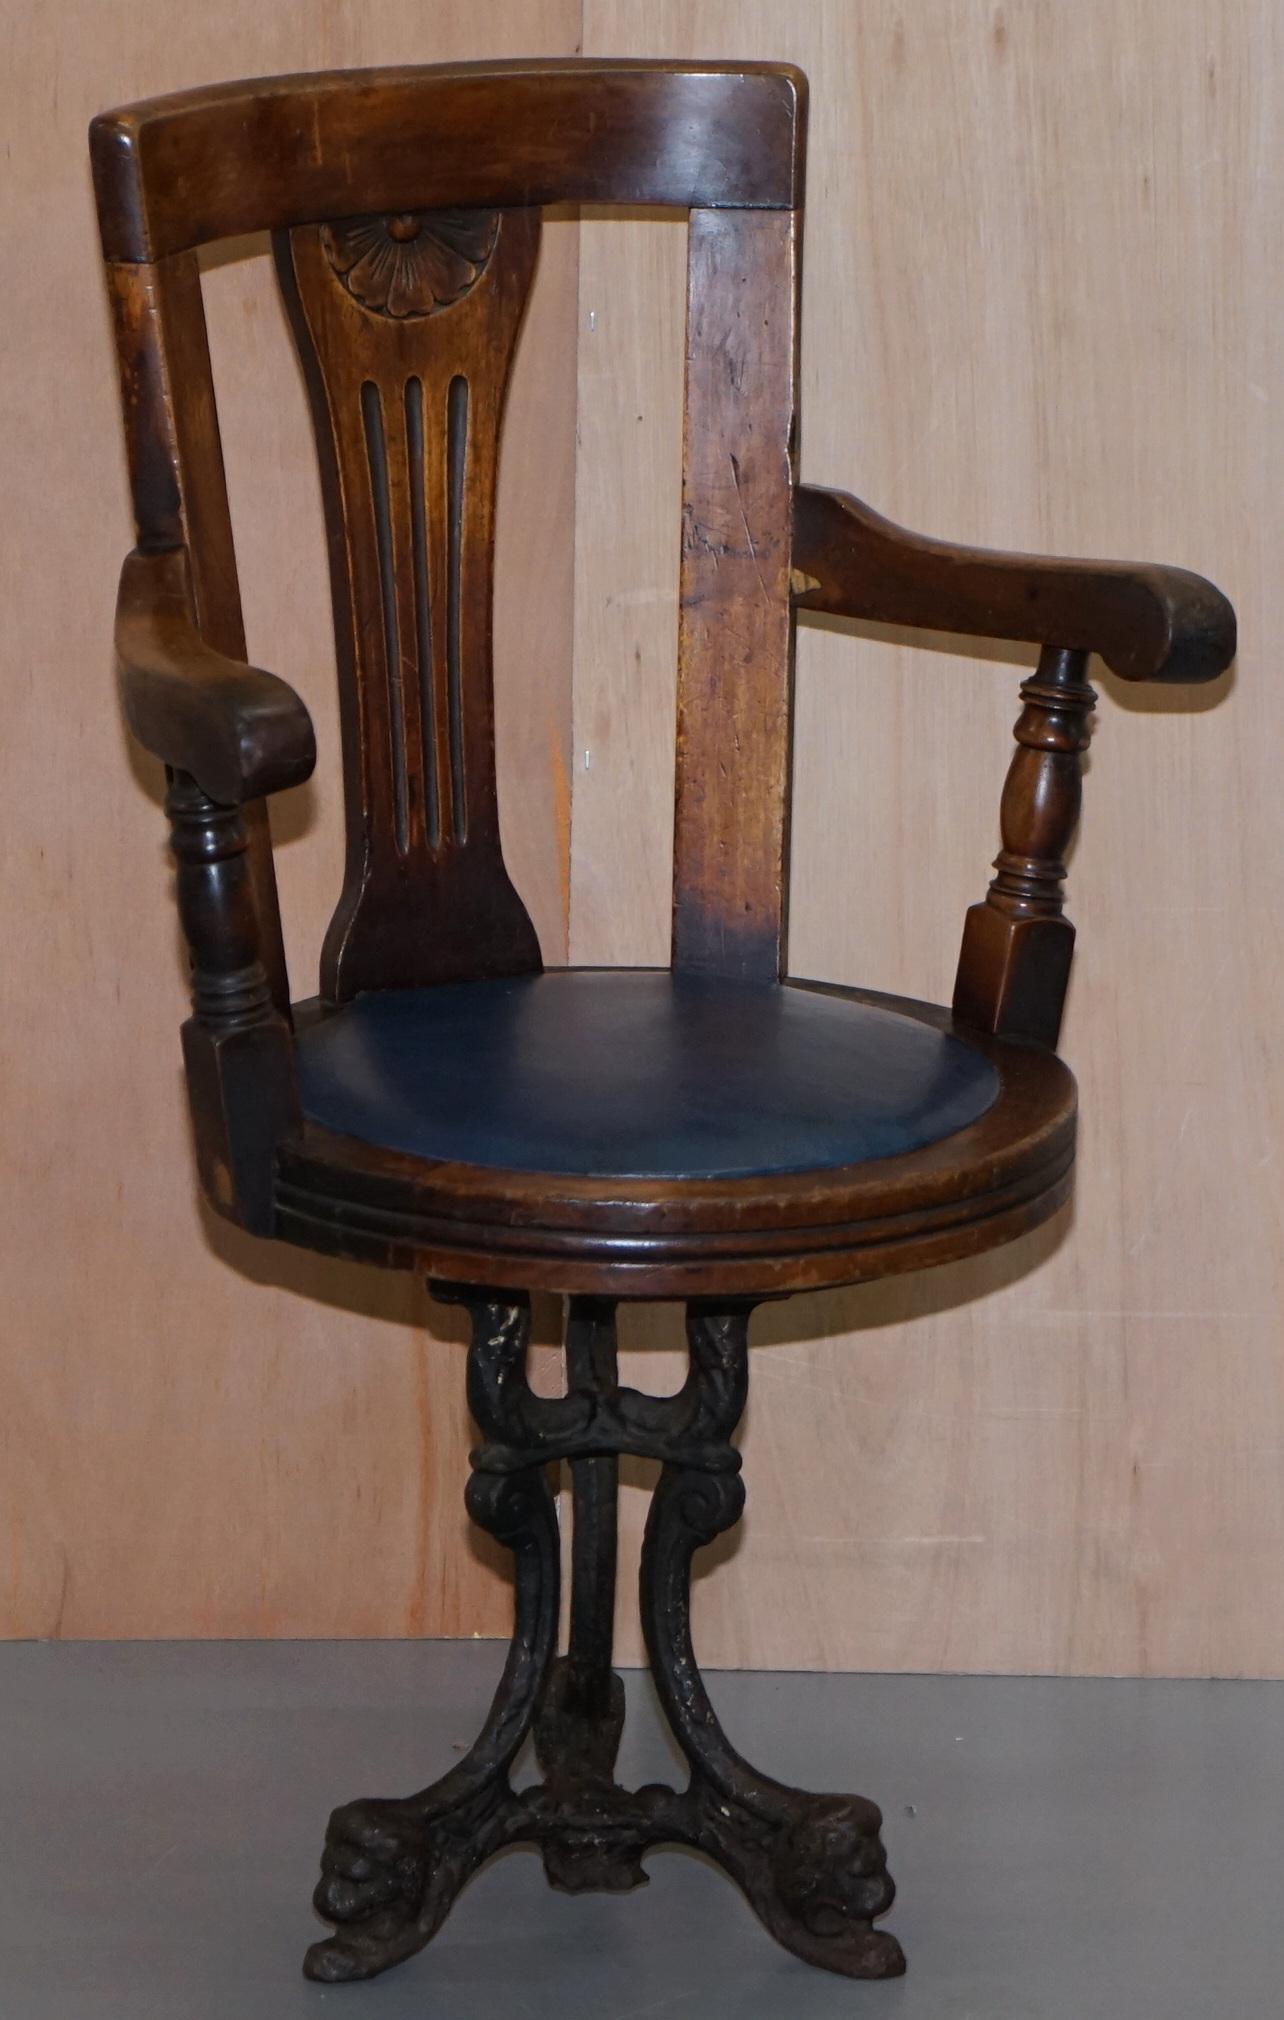 Nous sommes ravis d'offrir à la vente ce magnifique fauteuil pivotant de style victorien sur une base solide en fonte avec des détails en forme de tête de lion

Une chaise très esthétique et décorative, le bois est du noyer, la base du siège est